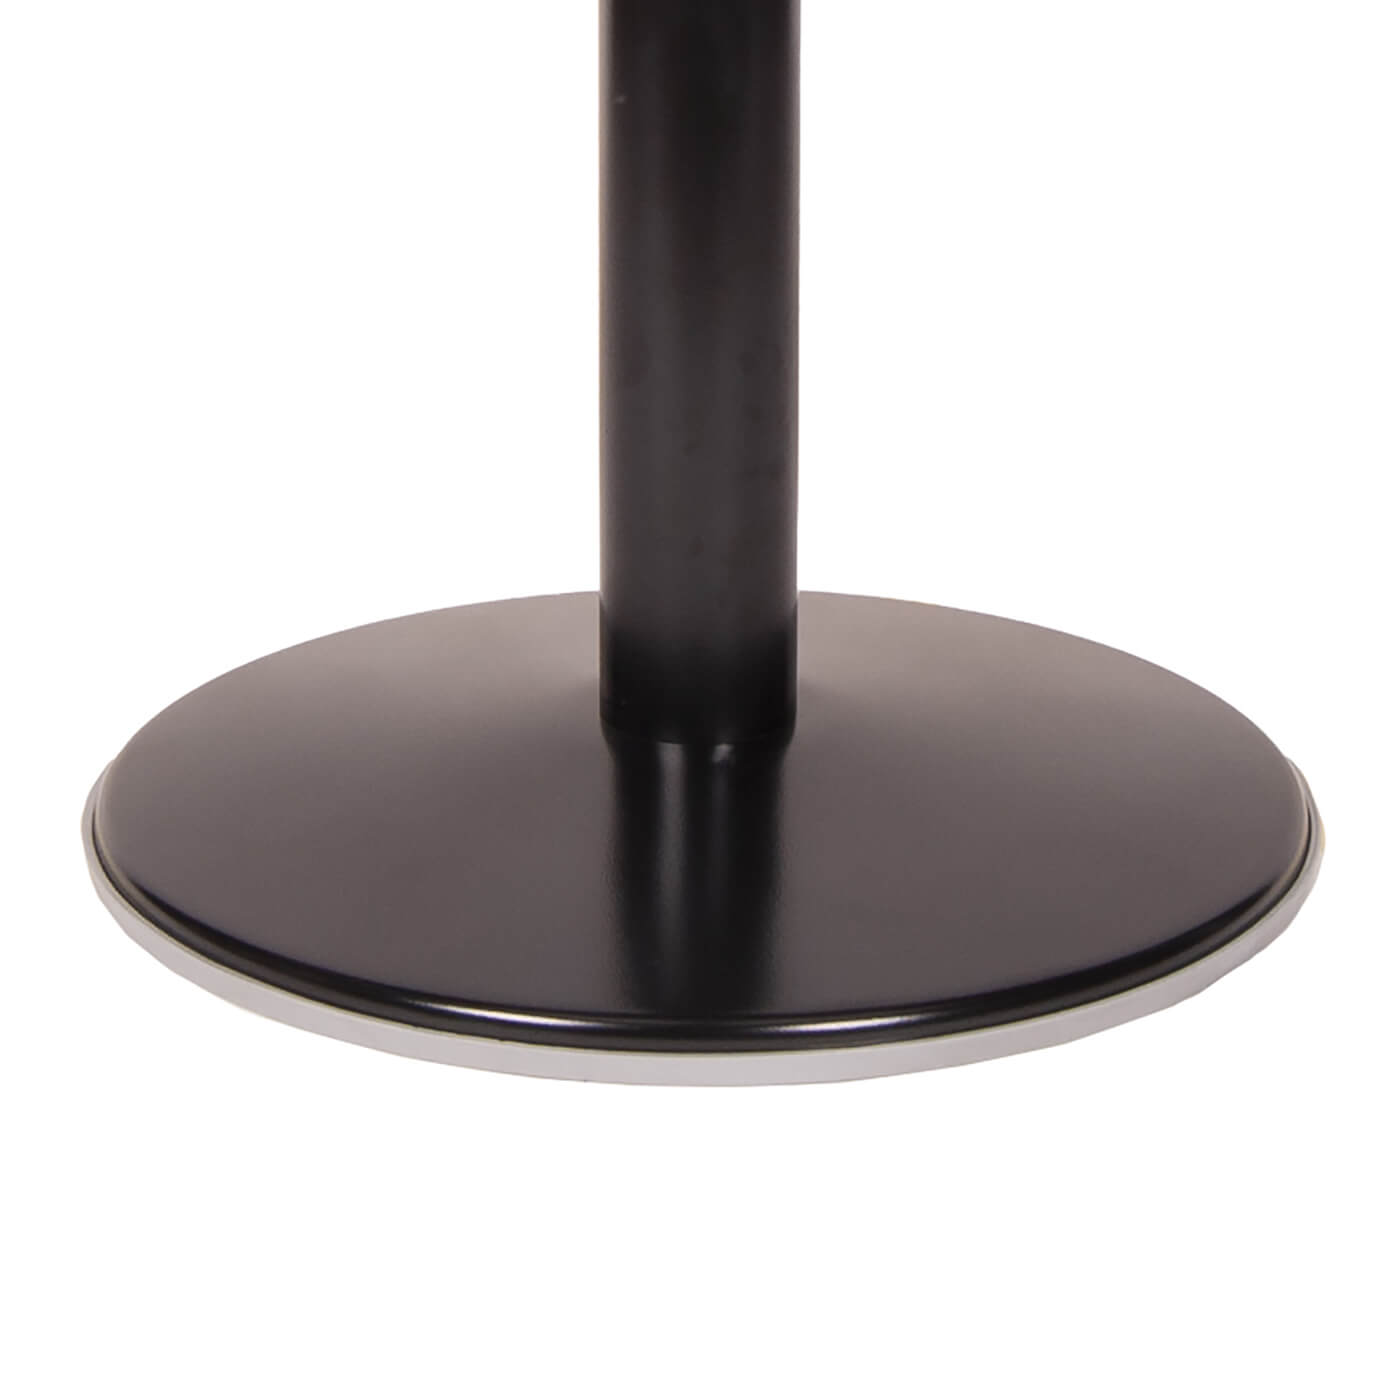 Picioare pentru masa din gradina, tersa, foisor, ROUND negru, din metal, rezistent, design modern. Diametru (cm) 48 Inaltime (cm) 72 Culoare negru Material metal Necesita asamblare da Cod FY-R1X314-BK